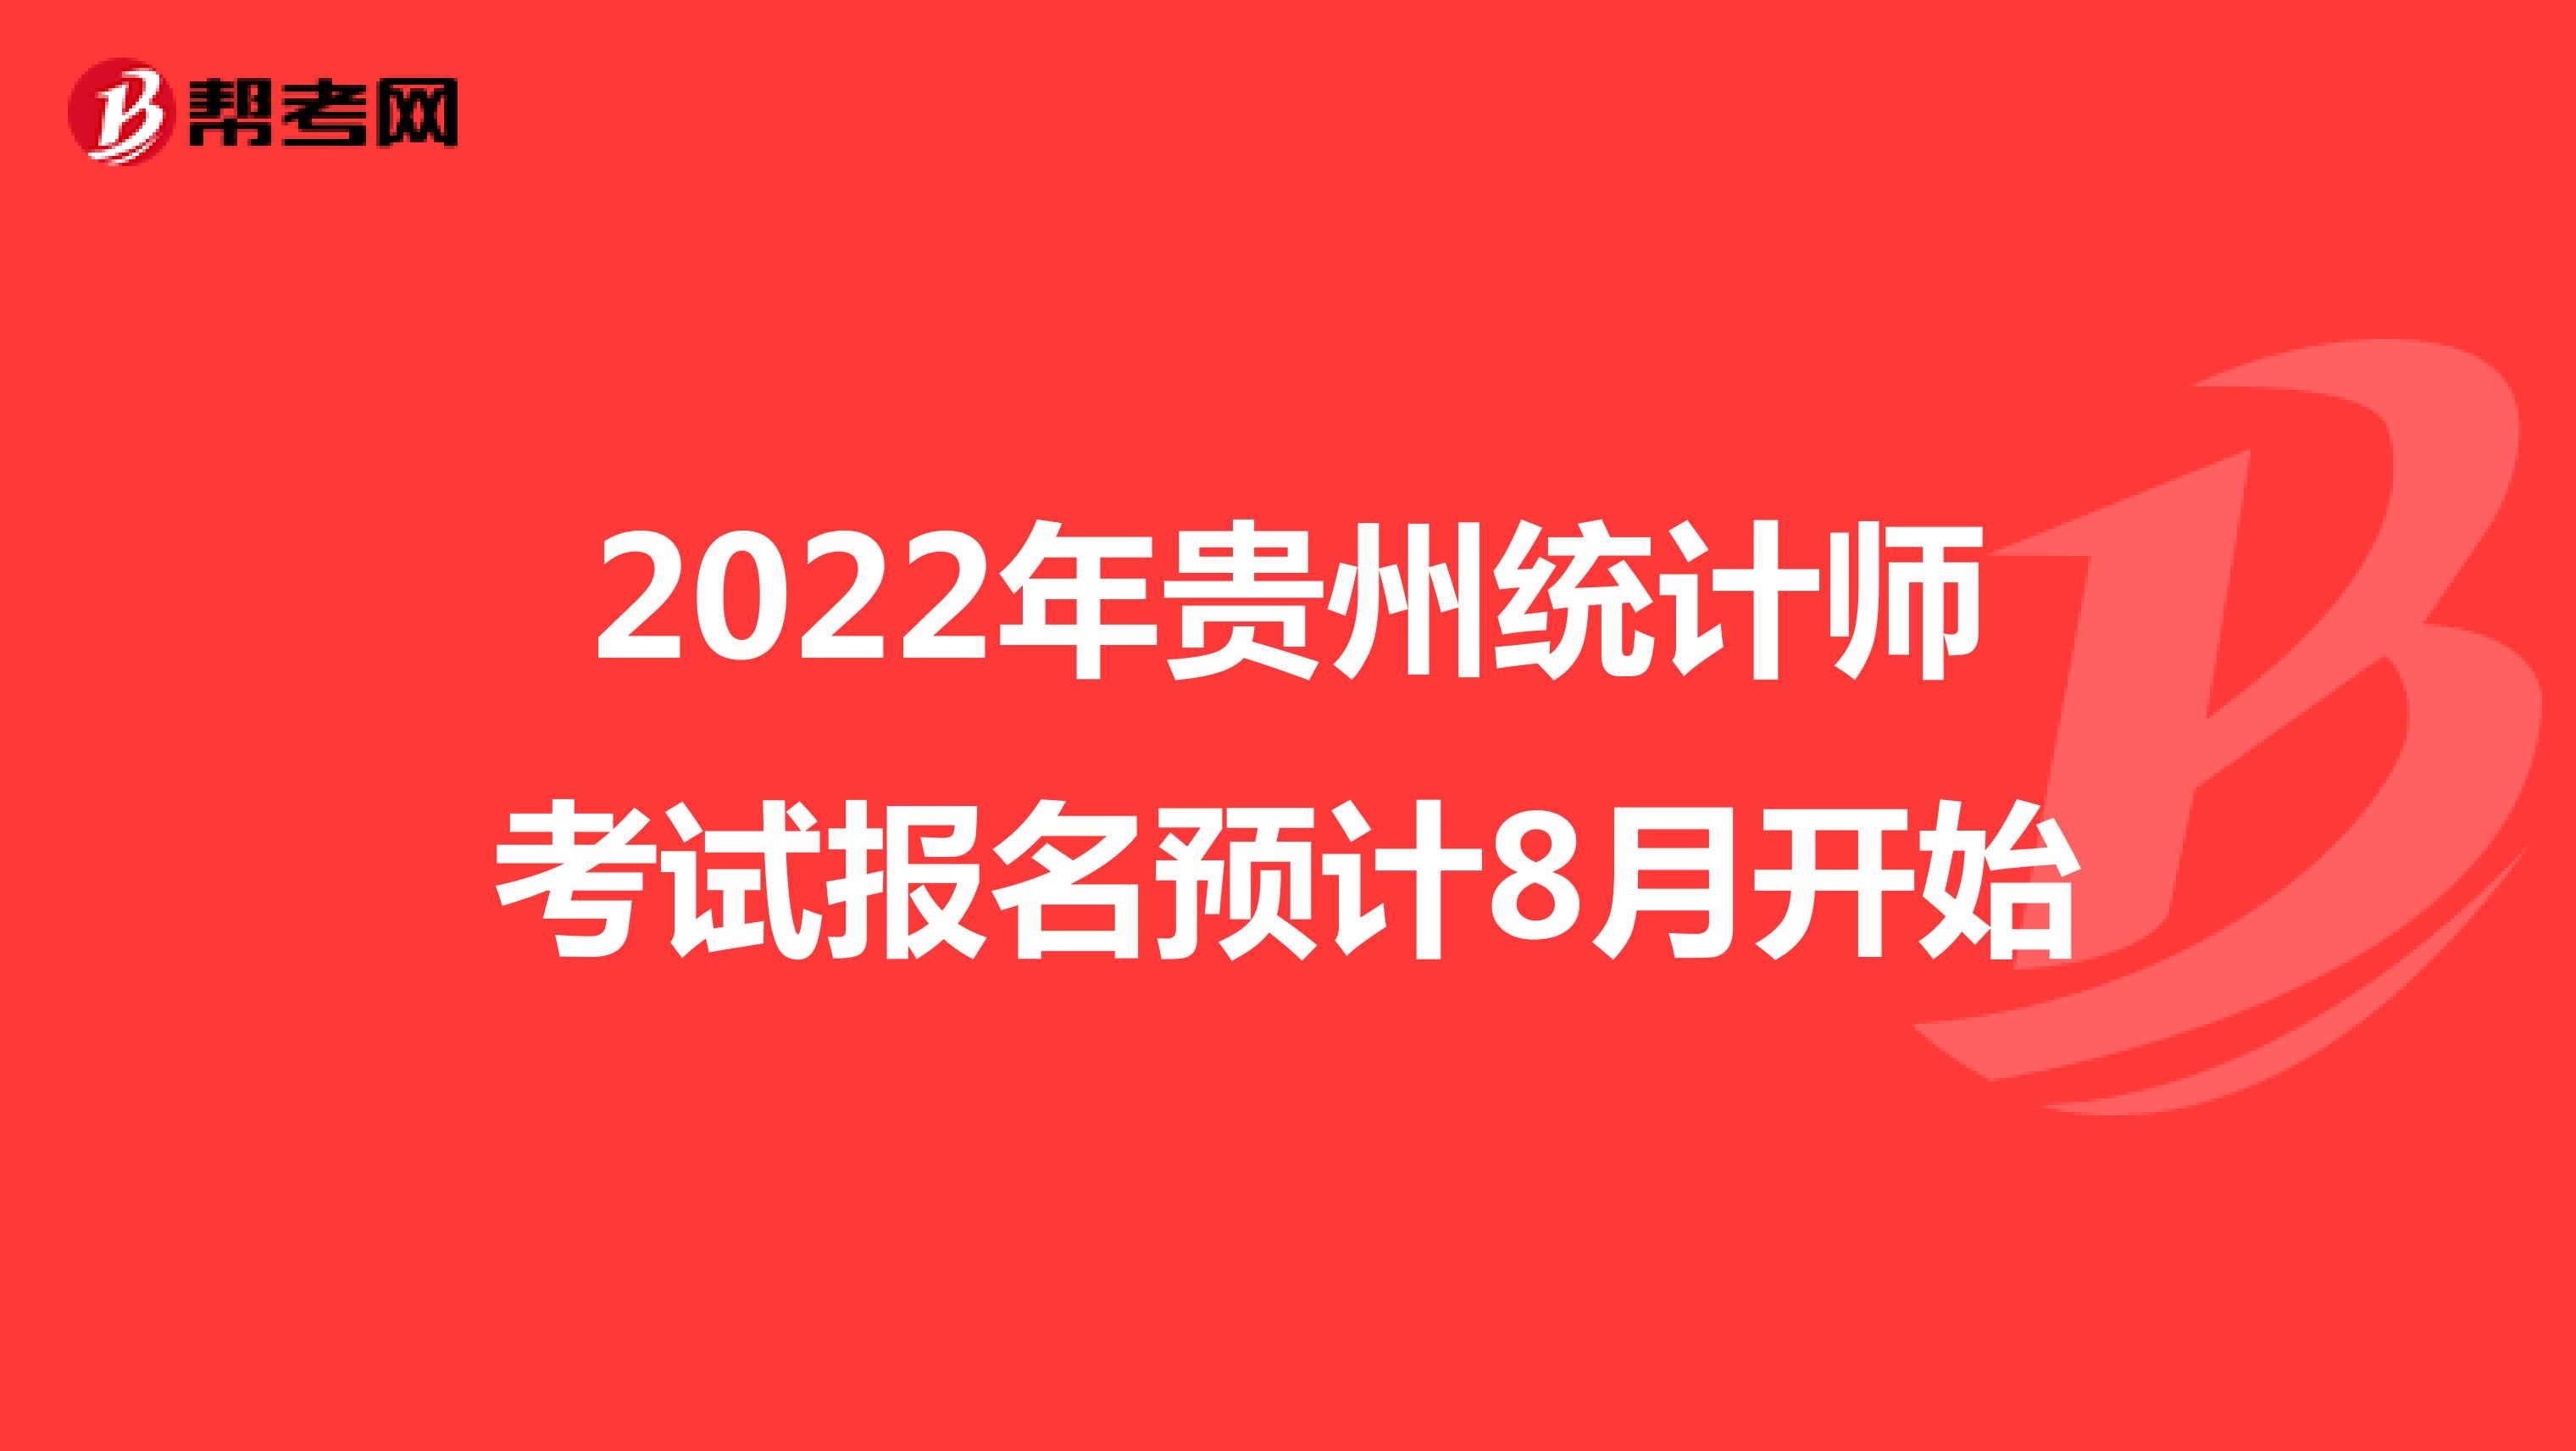 2022年贵州统计师考试报名预计8月开始